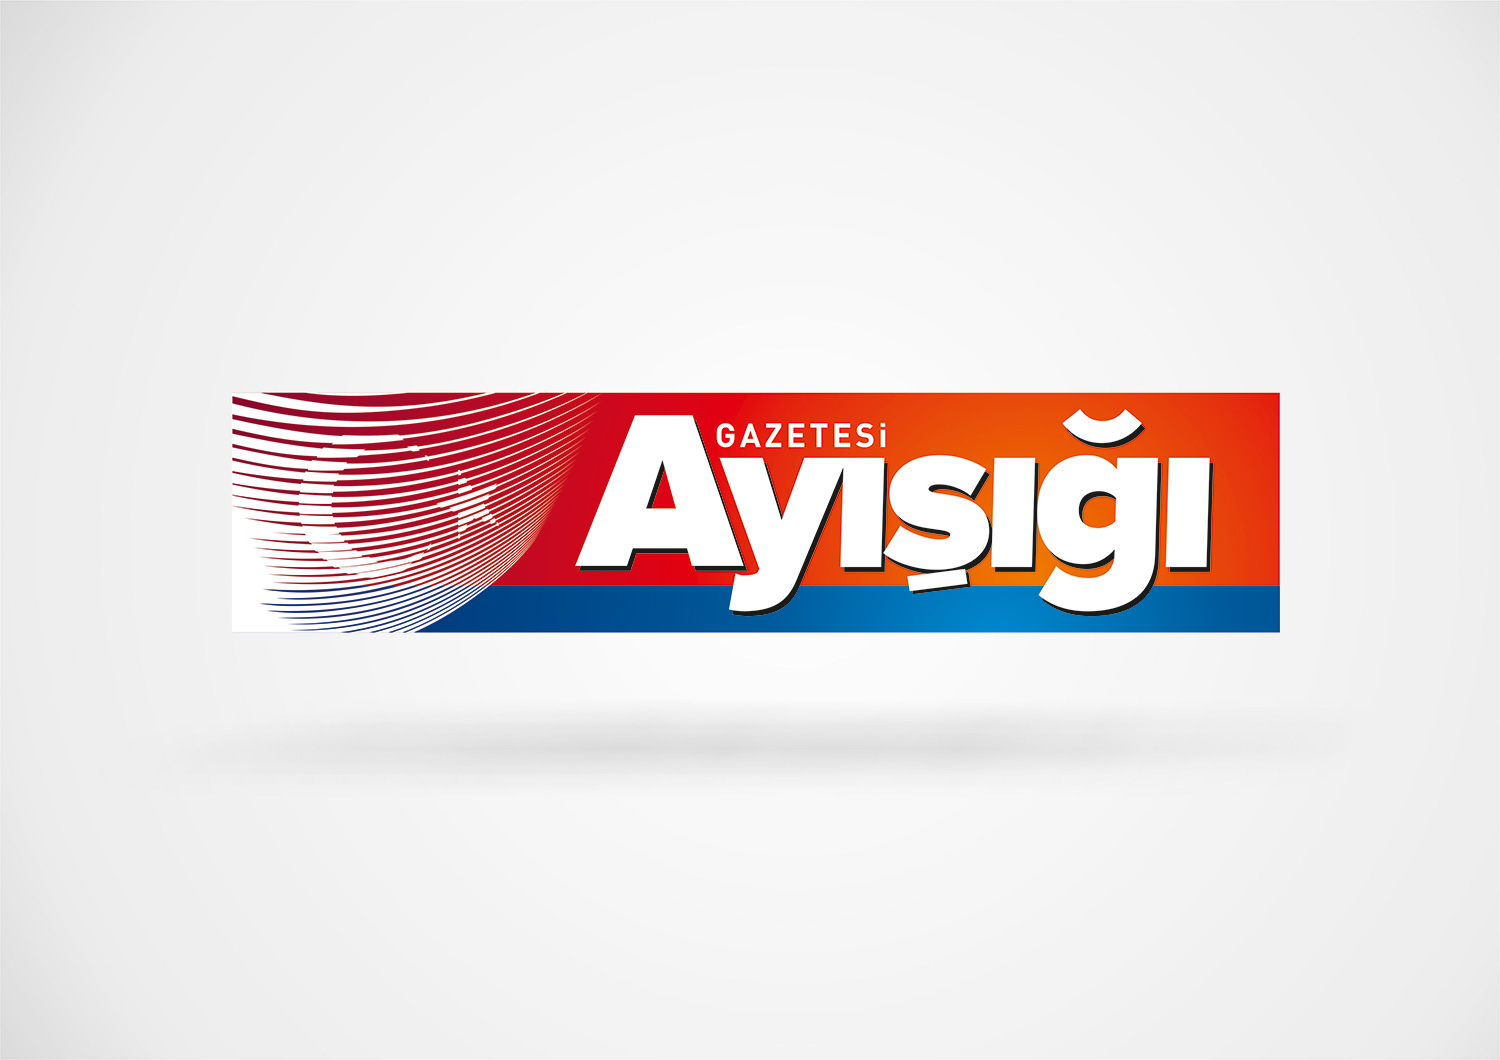 ayisigi_gazetesi_logo